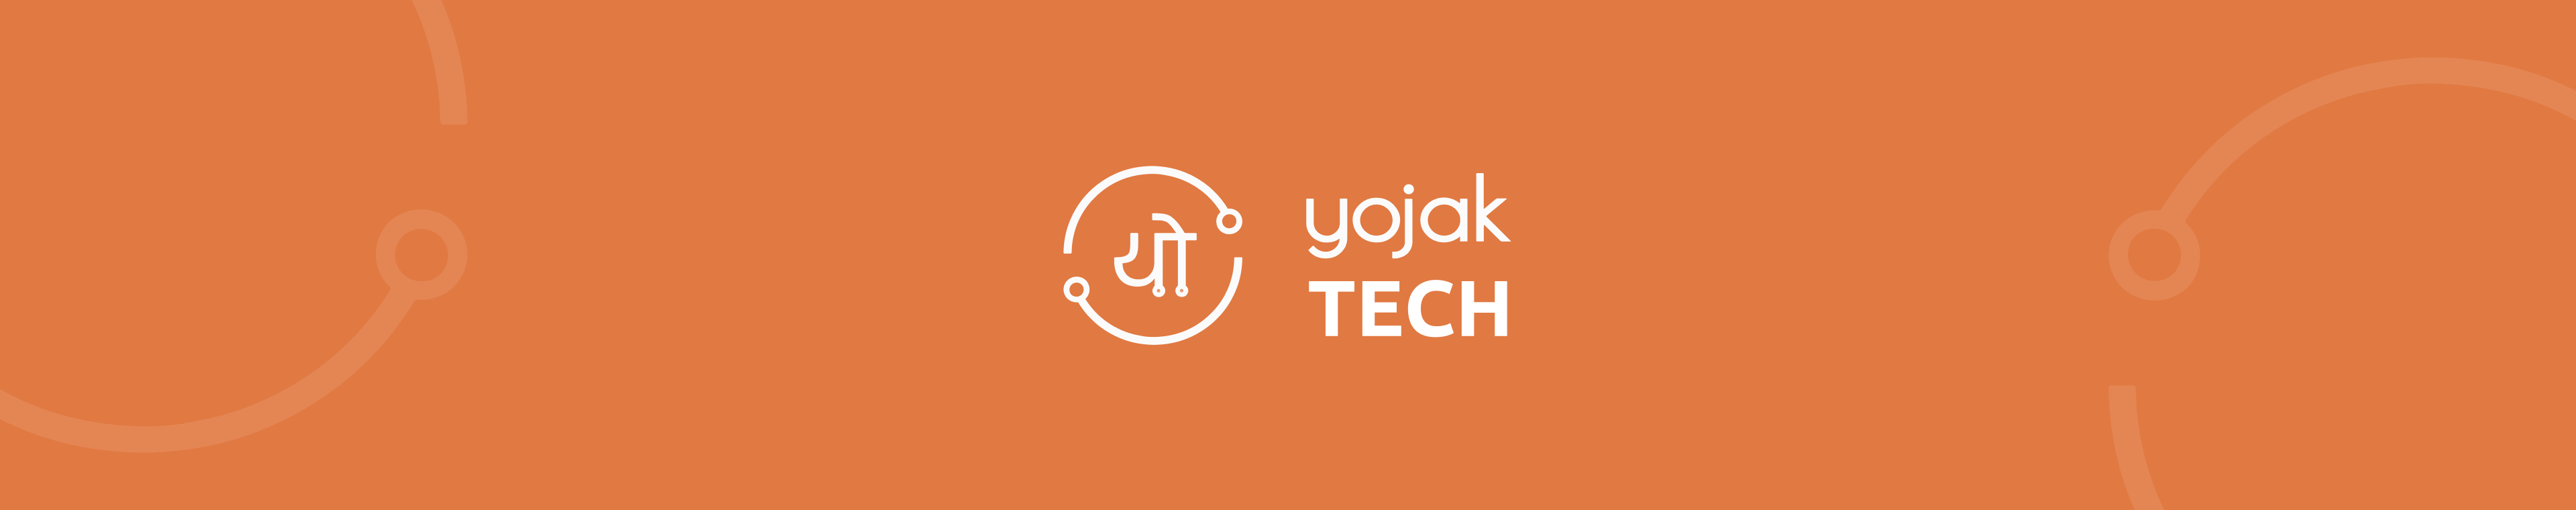 Yojak Tech Banner